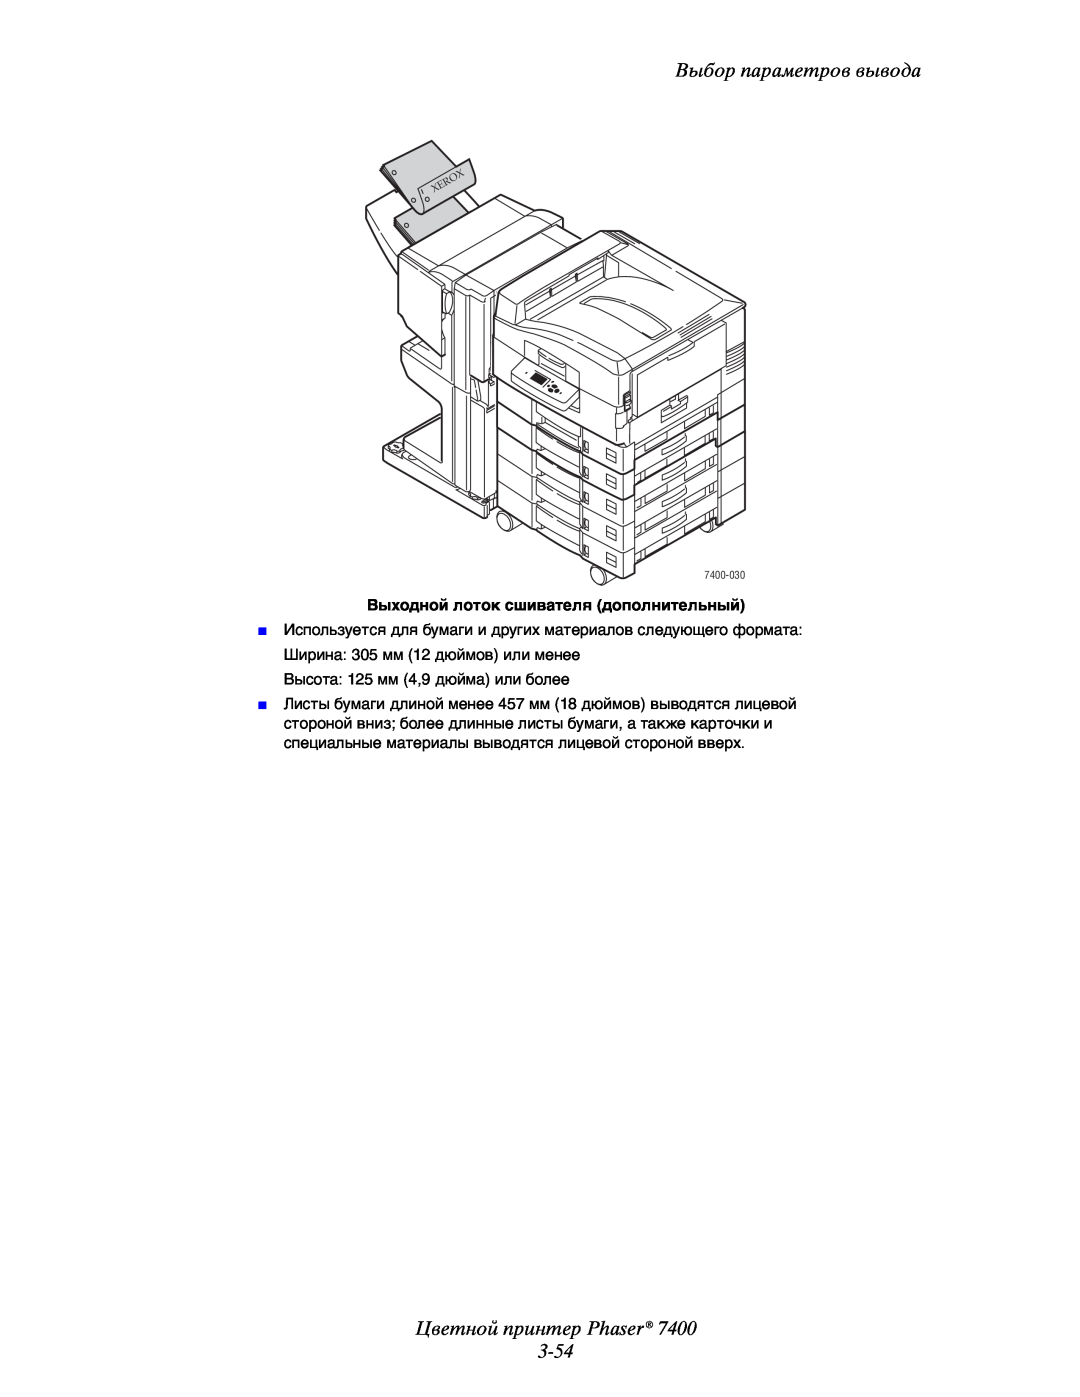 Xerox manual Цветной принтер Phaser 3-54, Выбор параметров вывода, Выходной лоток сшивателя дополнительный, 7400-030 